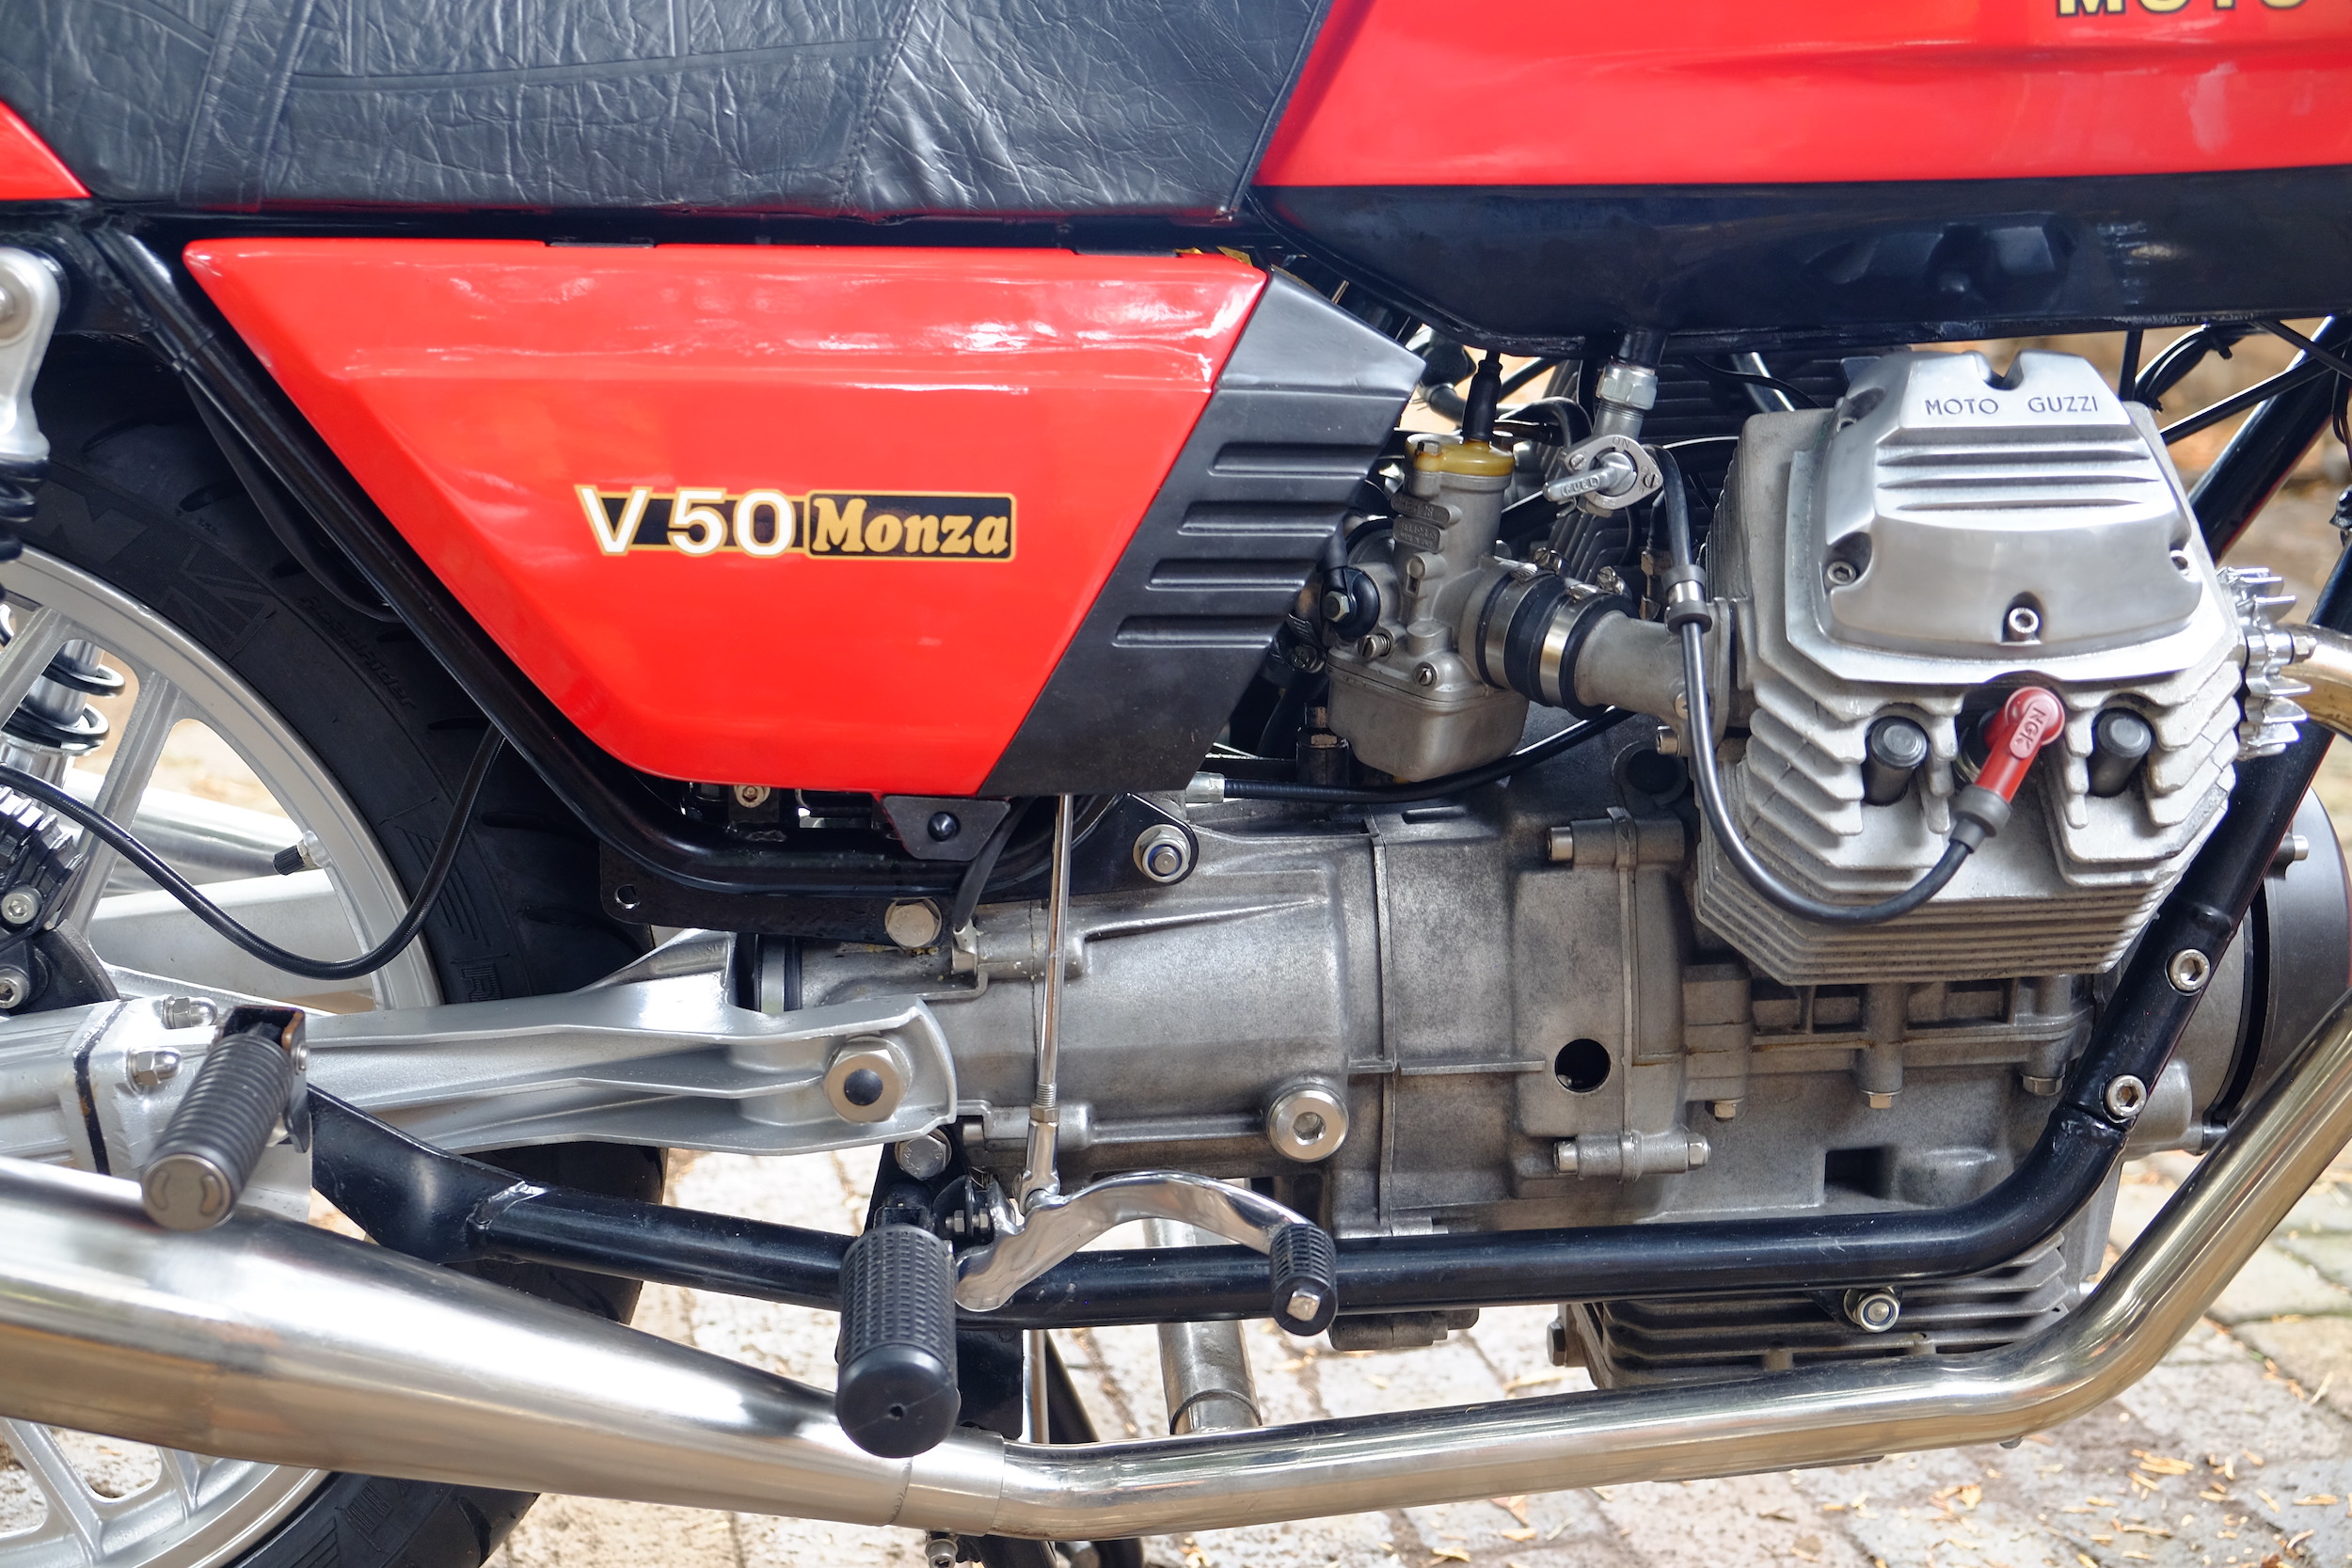 53030 Batteria Top 12v 30ah Moto Guzzi V50 Imola/v50 Monza 500 - 00127